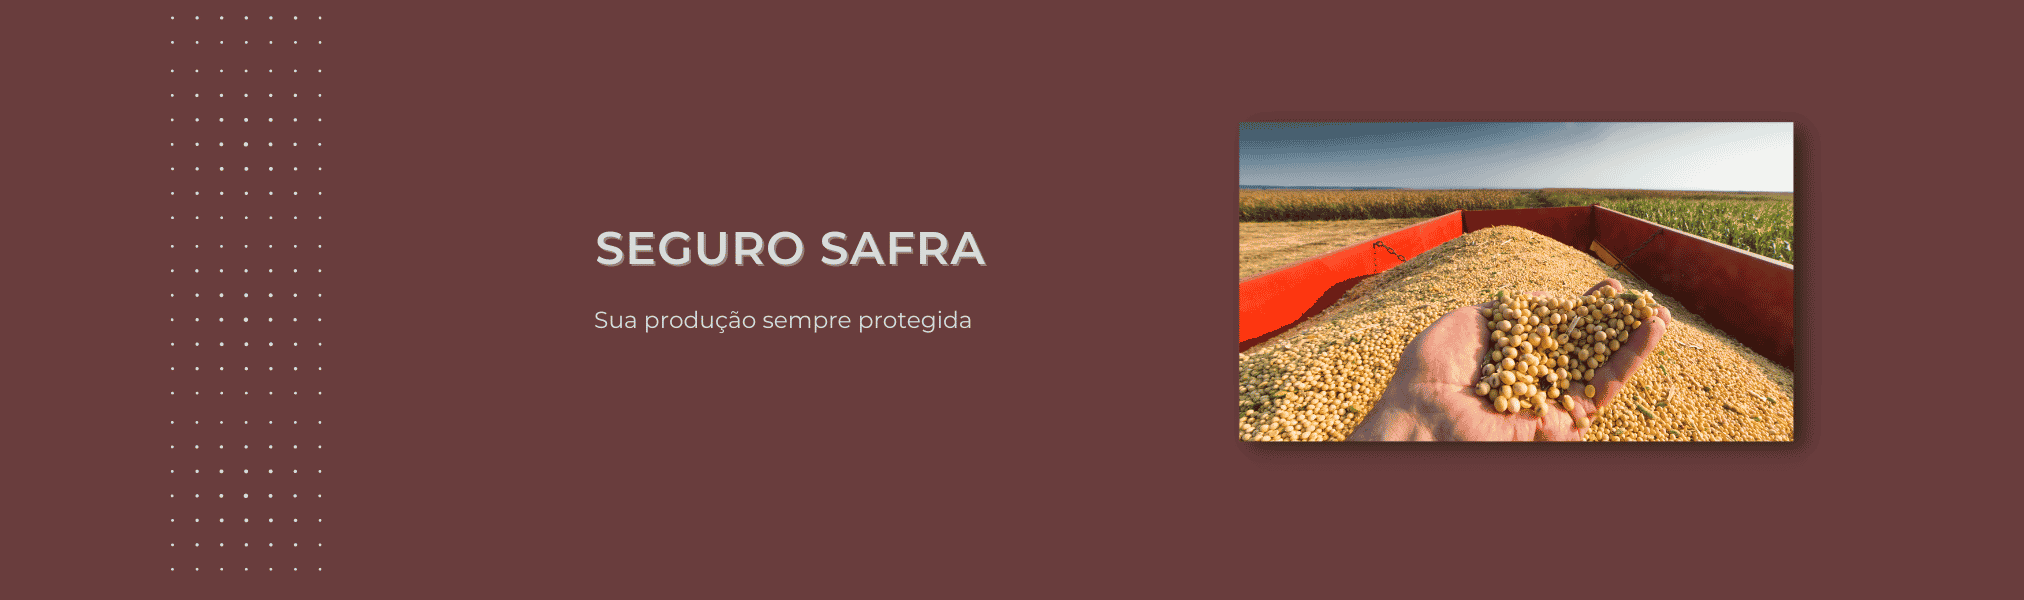 Banner Seguro Safra